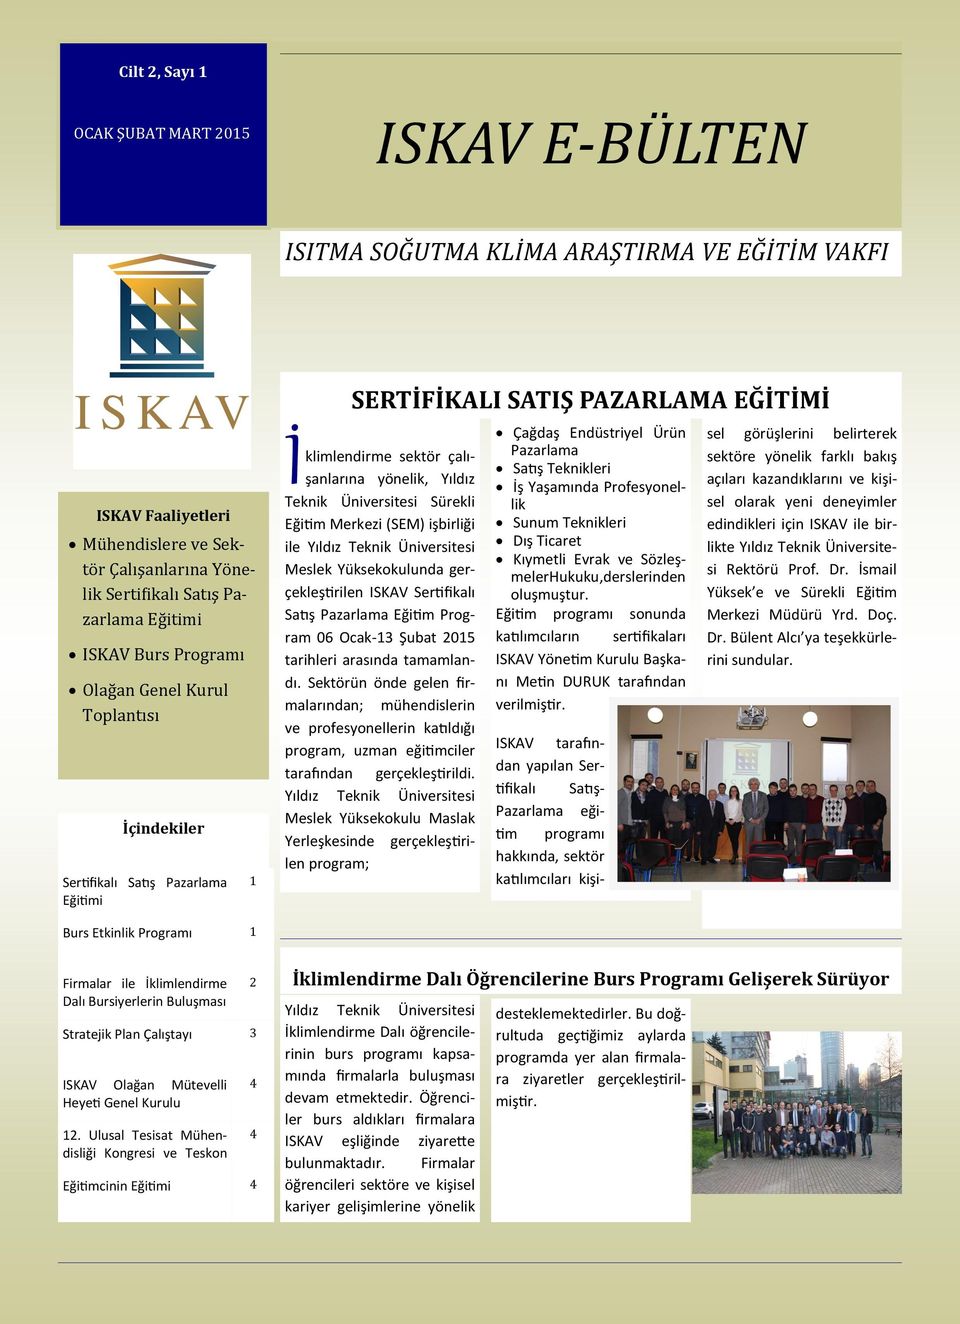 Sürekli Eğitim Merkezi (SEM) işbirliği ile Meslek Yüksekokulunda gerçekleştirilen ISKAV Sertifikalı Satış Pazarlama Eğitim Program 06 Ocak-13 Şubat 2015 tarihleri arasında tamamlandı.